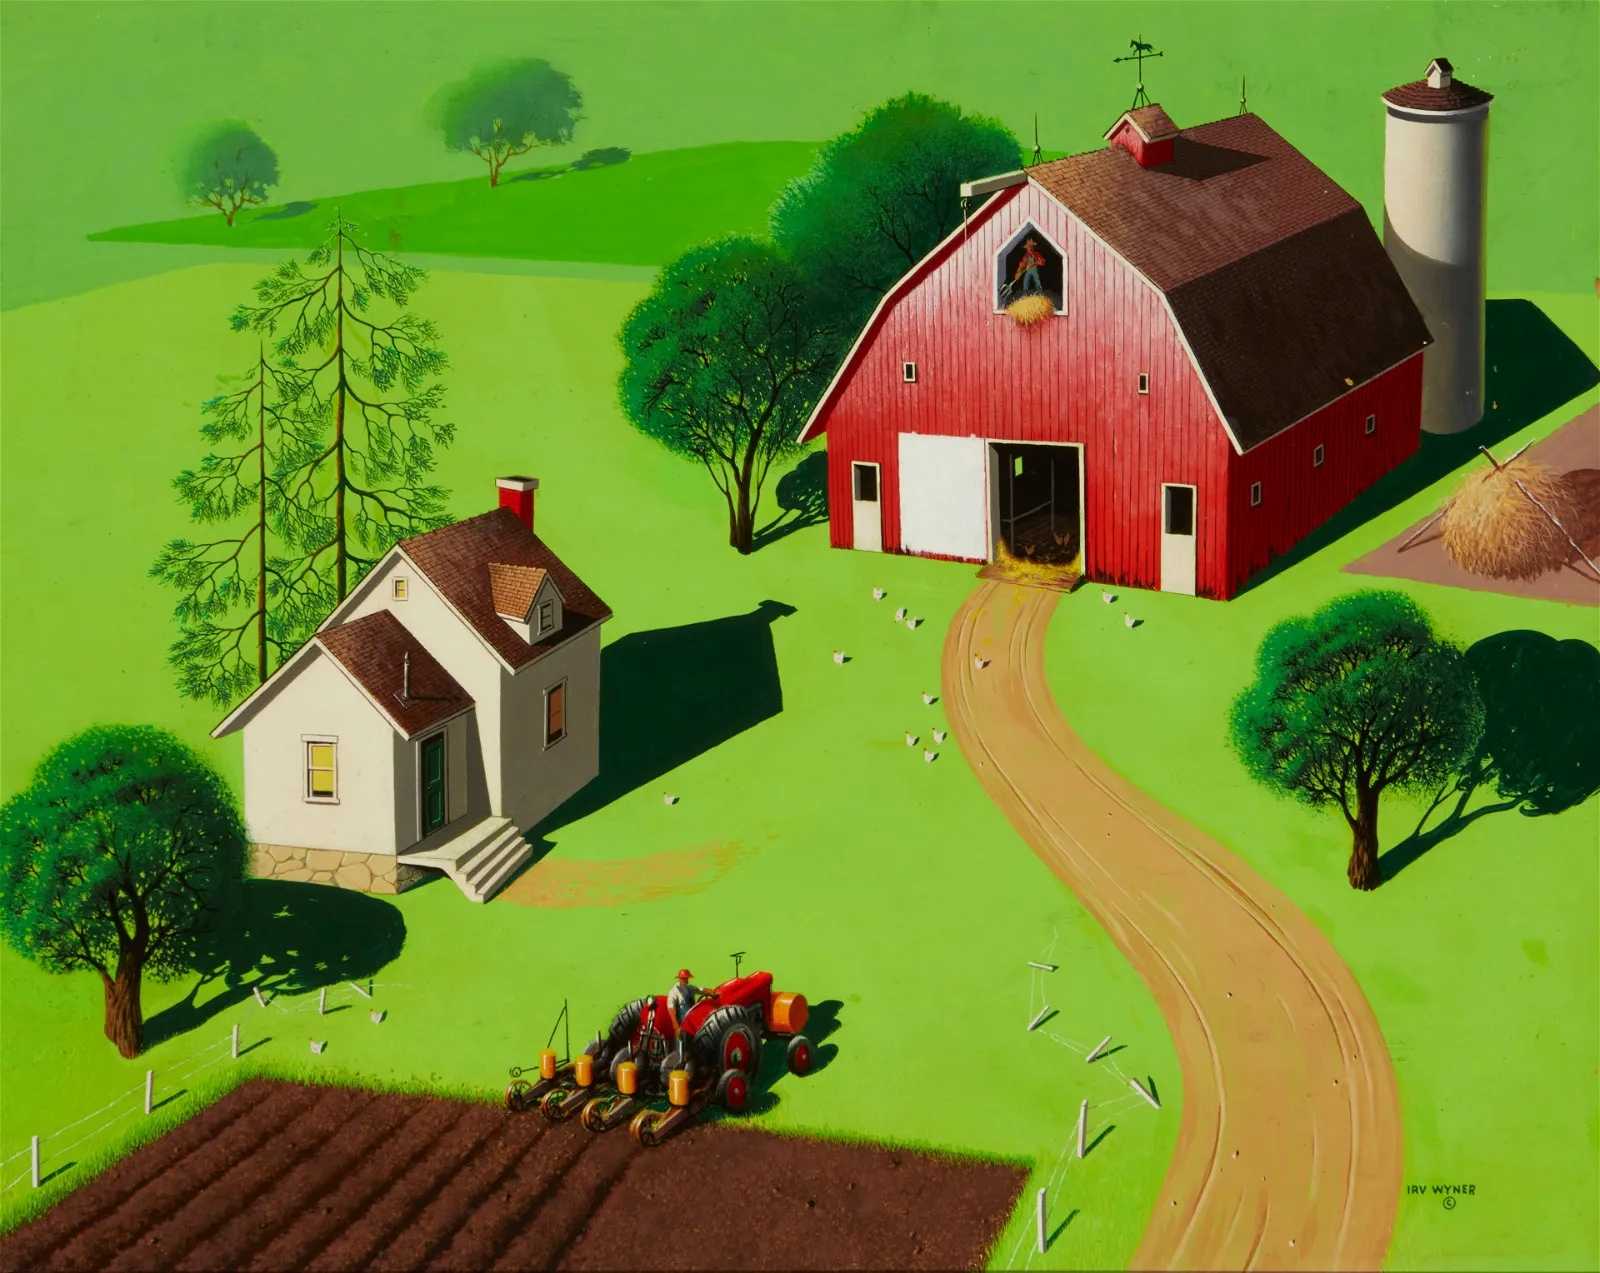 Irv Wyner, 'Farm Scene in Green,' estimated at $1,000-$2,000 at John Moran.